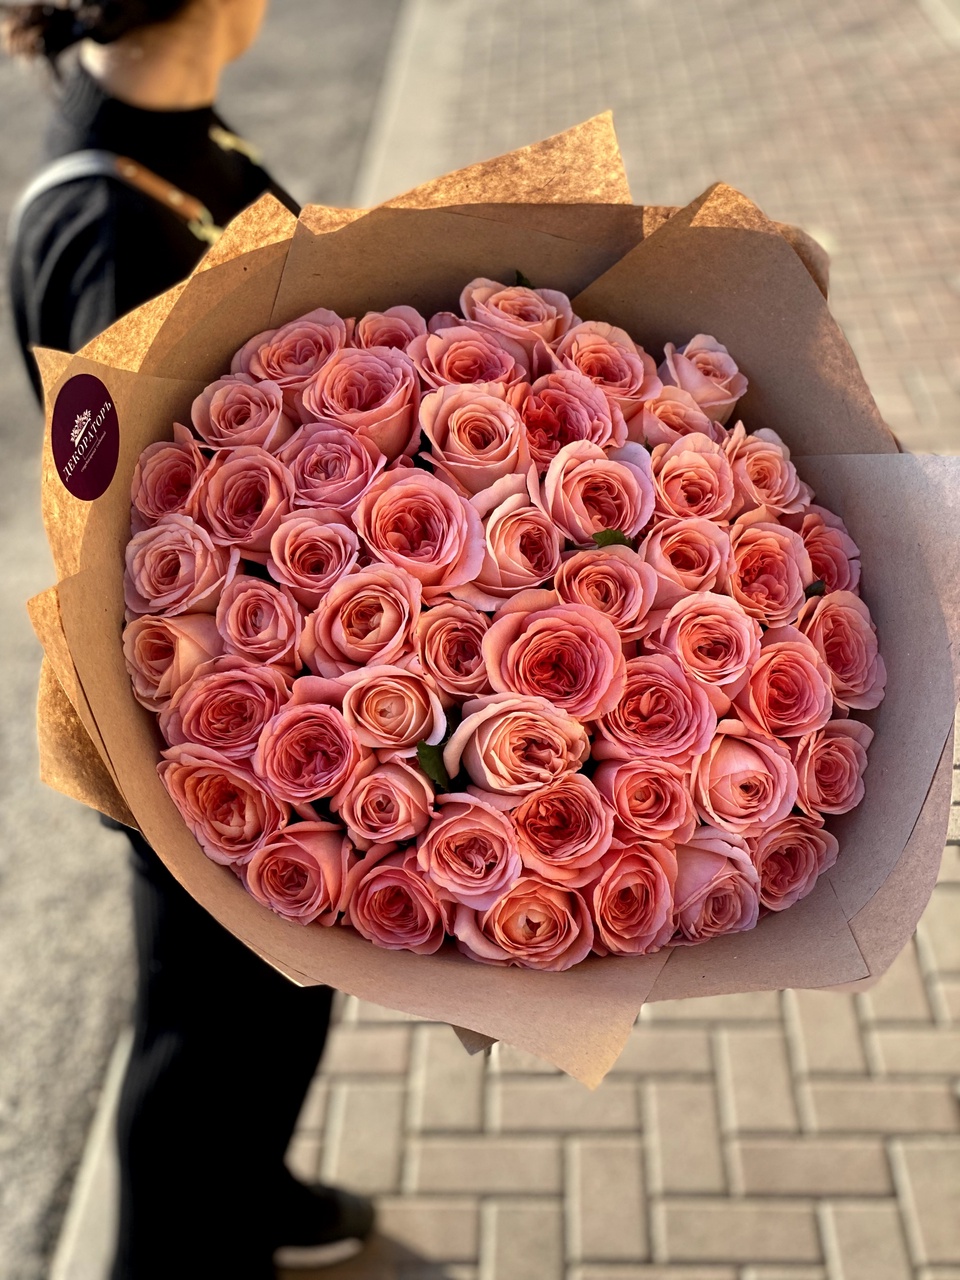 Букет цветов - 7 000 ₽, заказать онлайн.